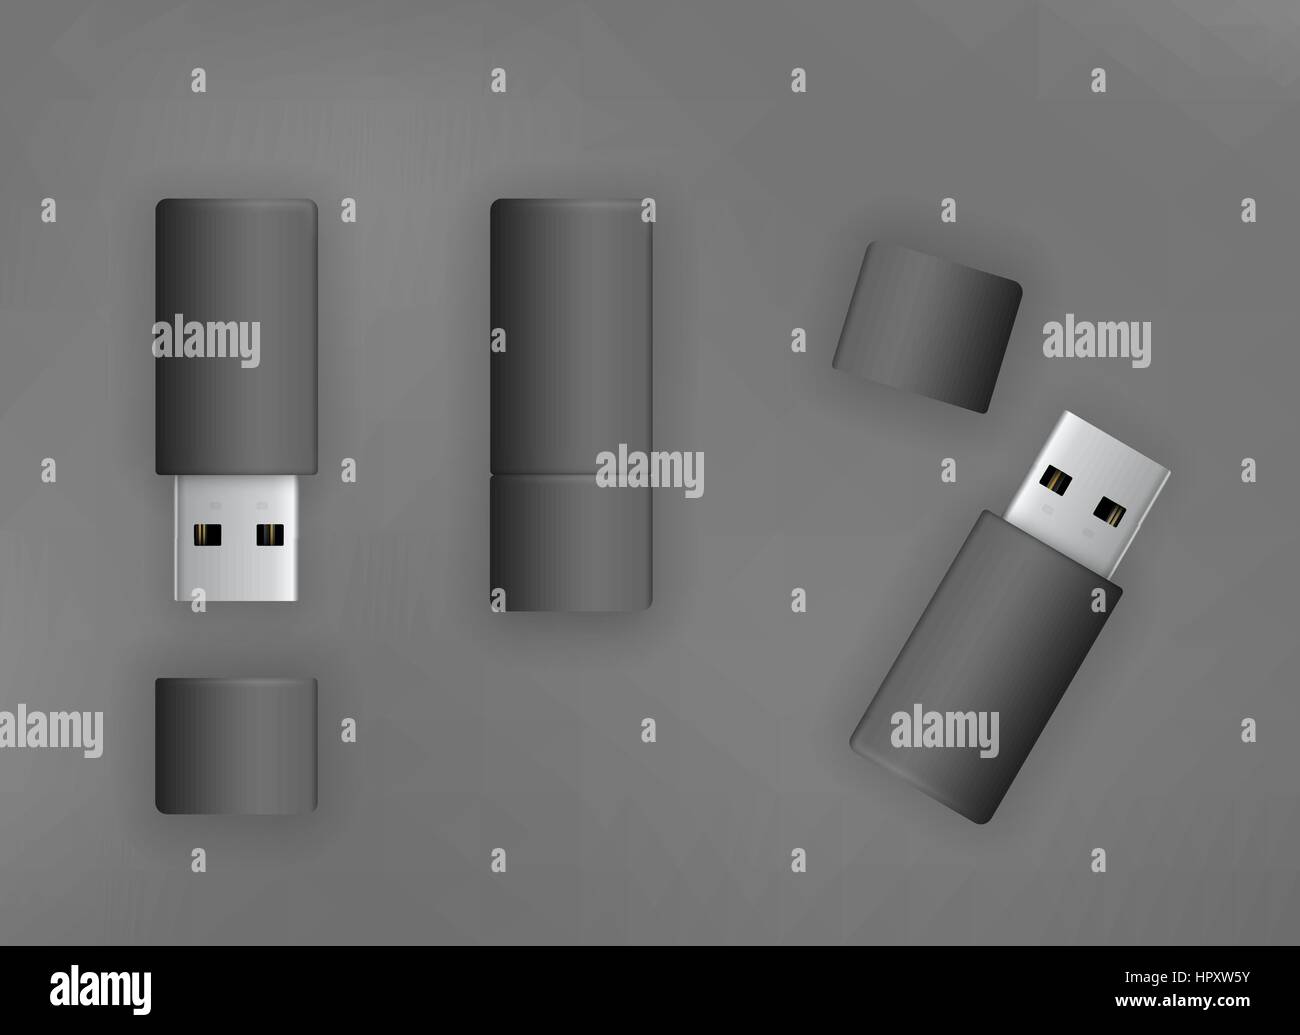 Stick USB flash drive Illustrazione Vettoriale